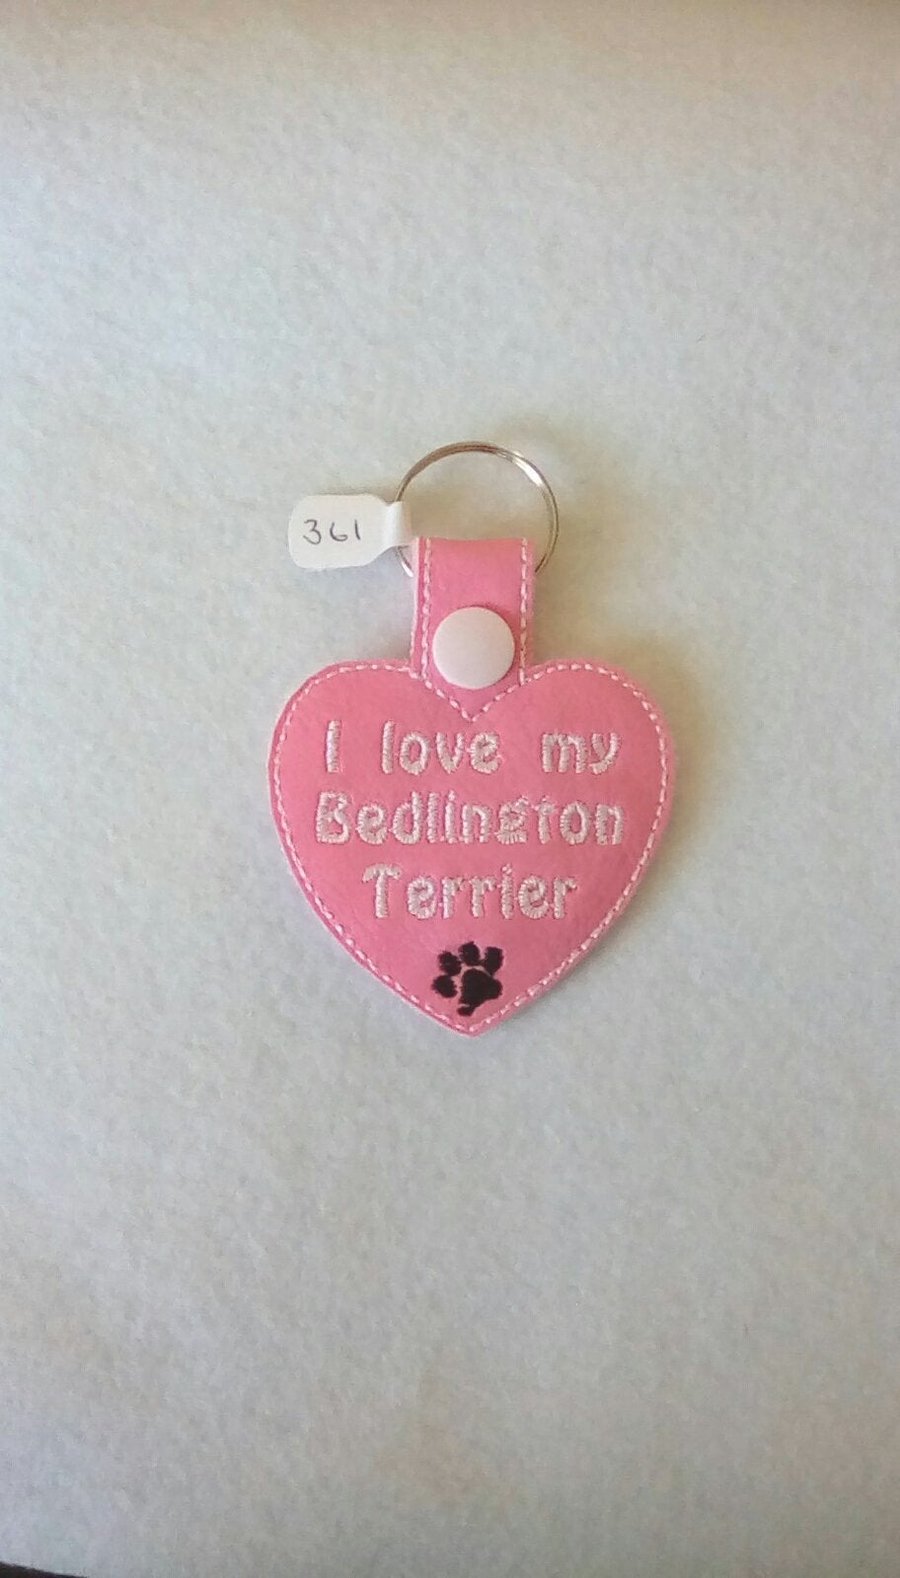 361. I love my Bedlington Terrier keyring.